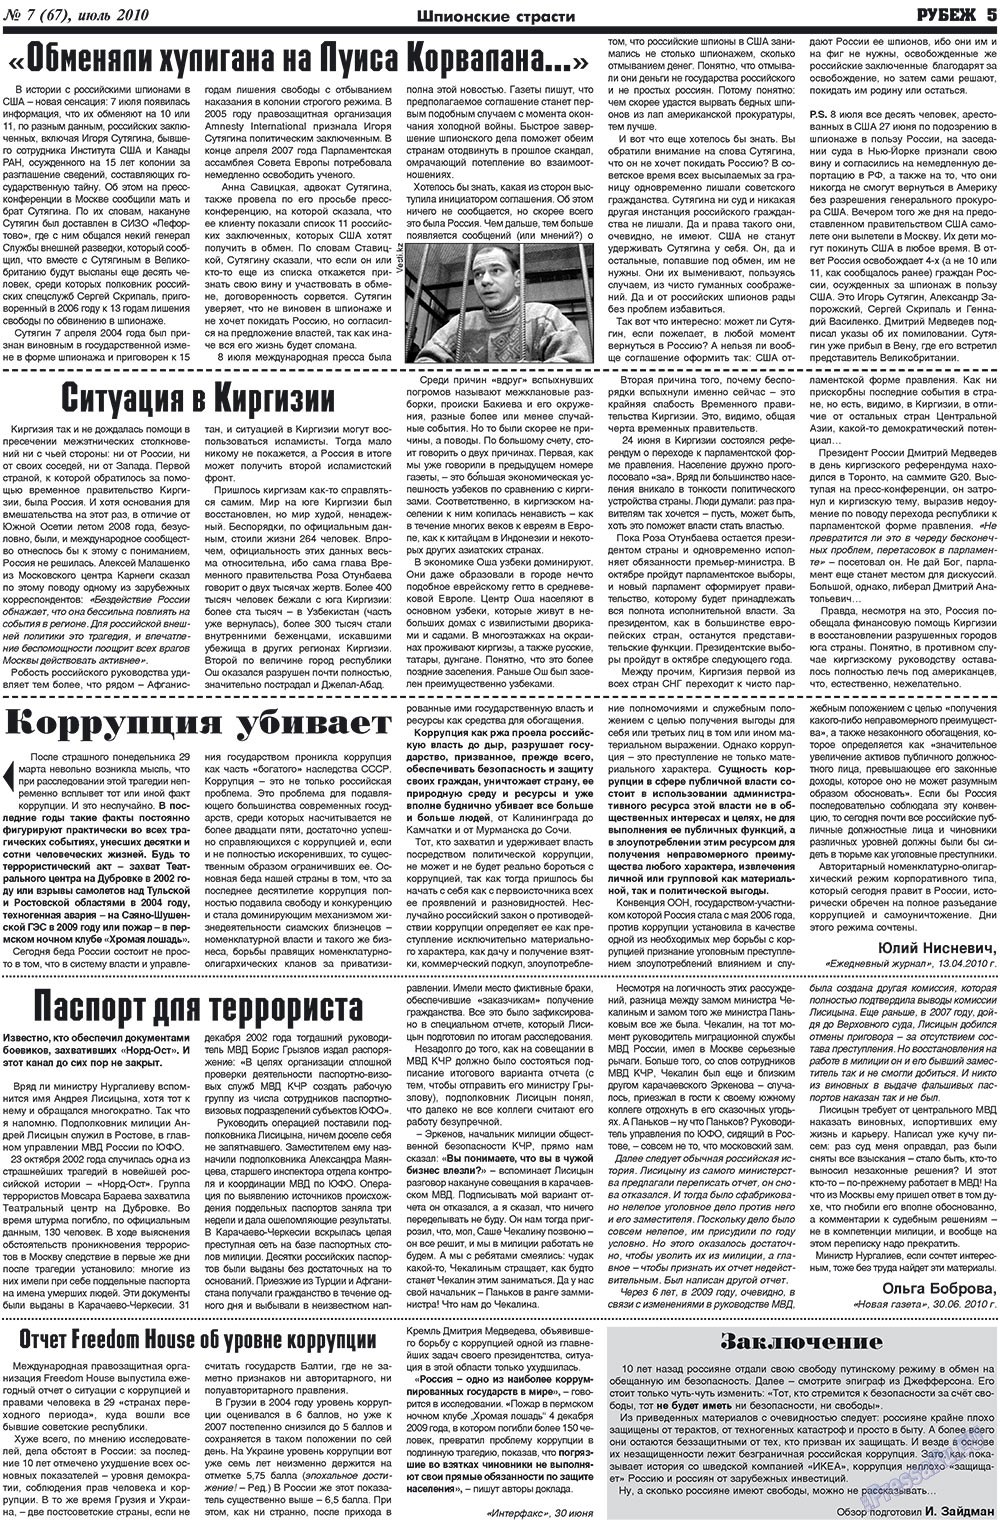 Рубеж (газета). 2010 год, номер 7, стр. 5